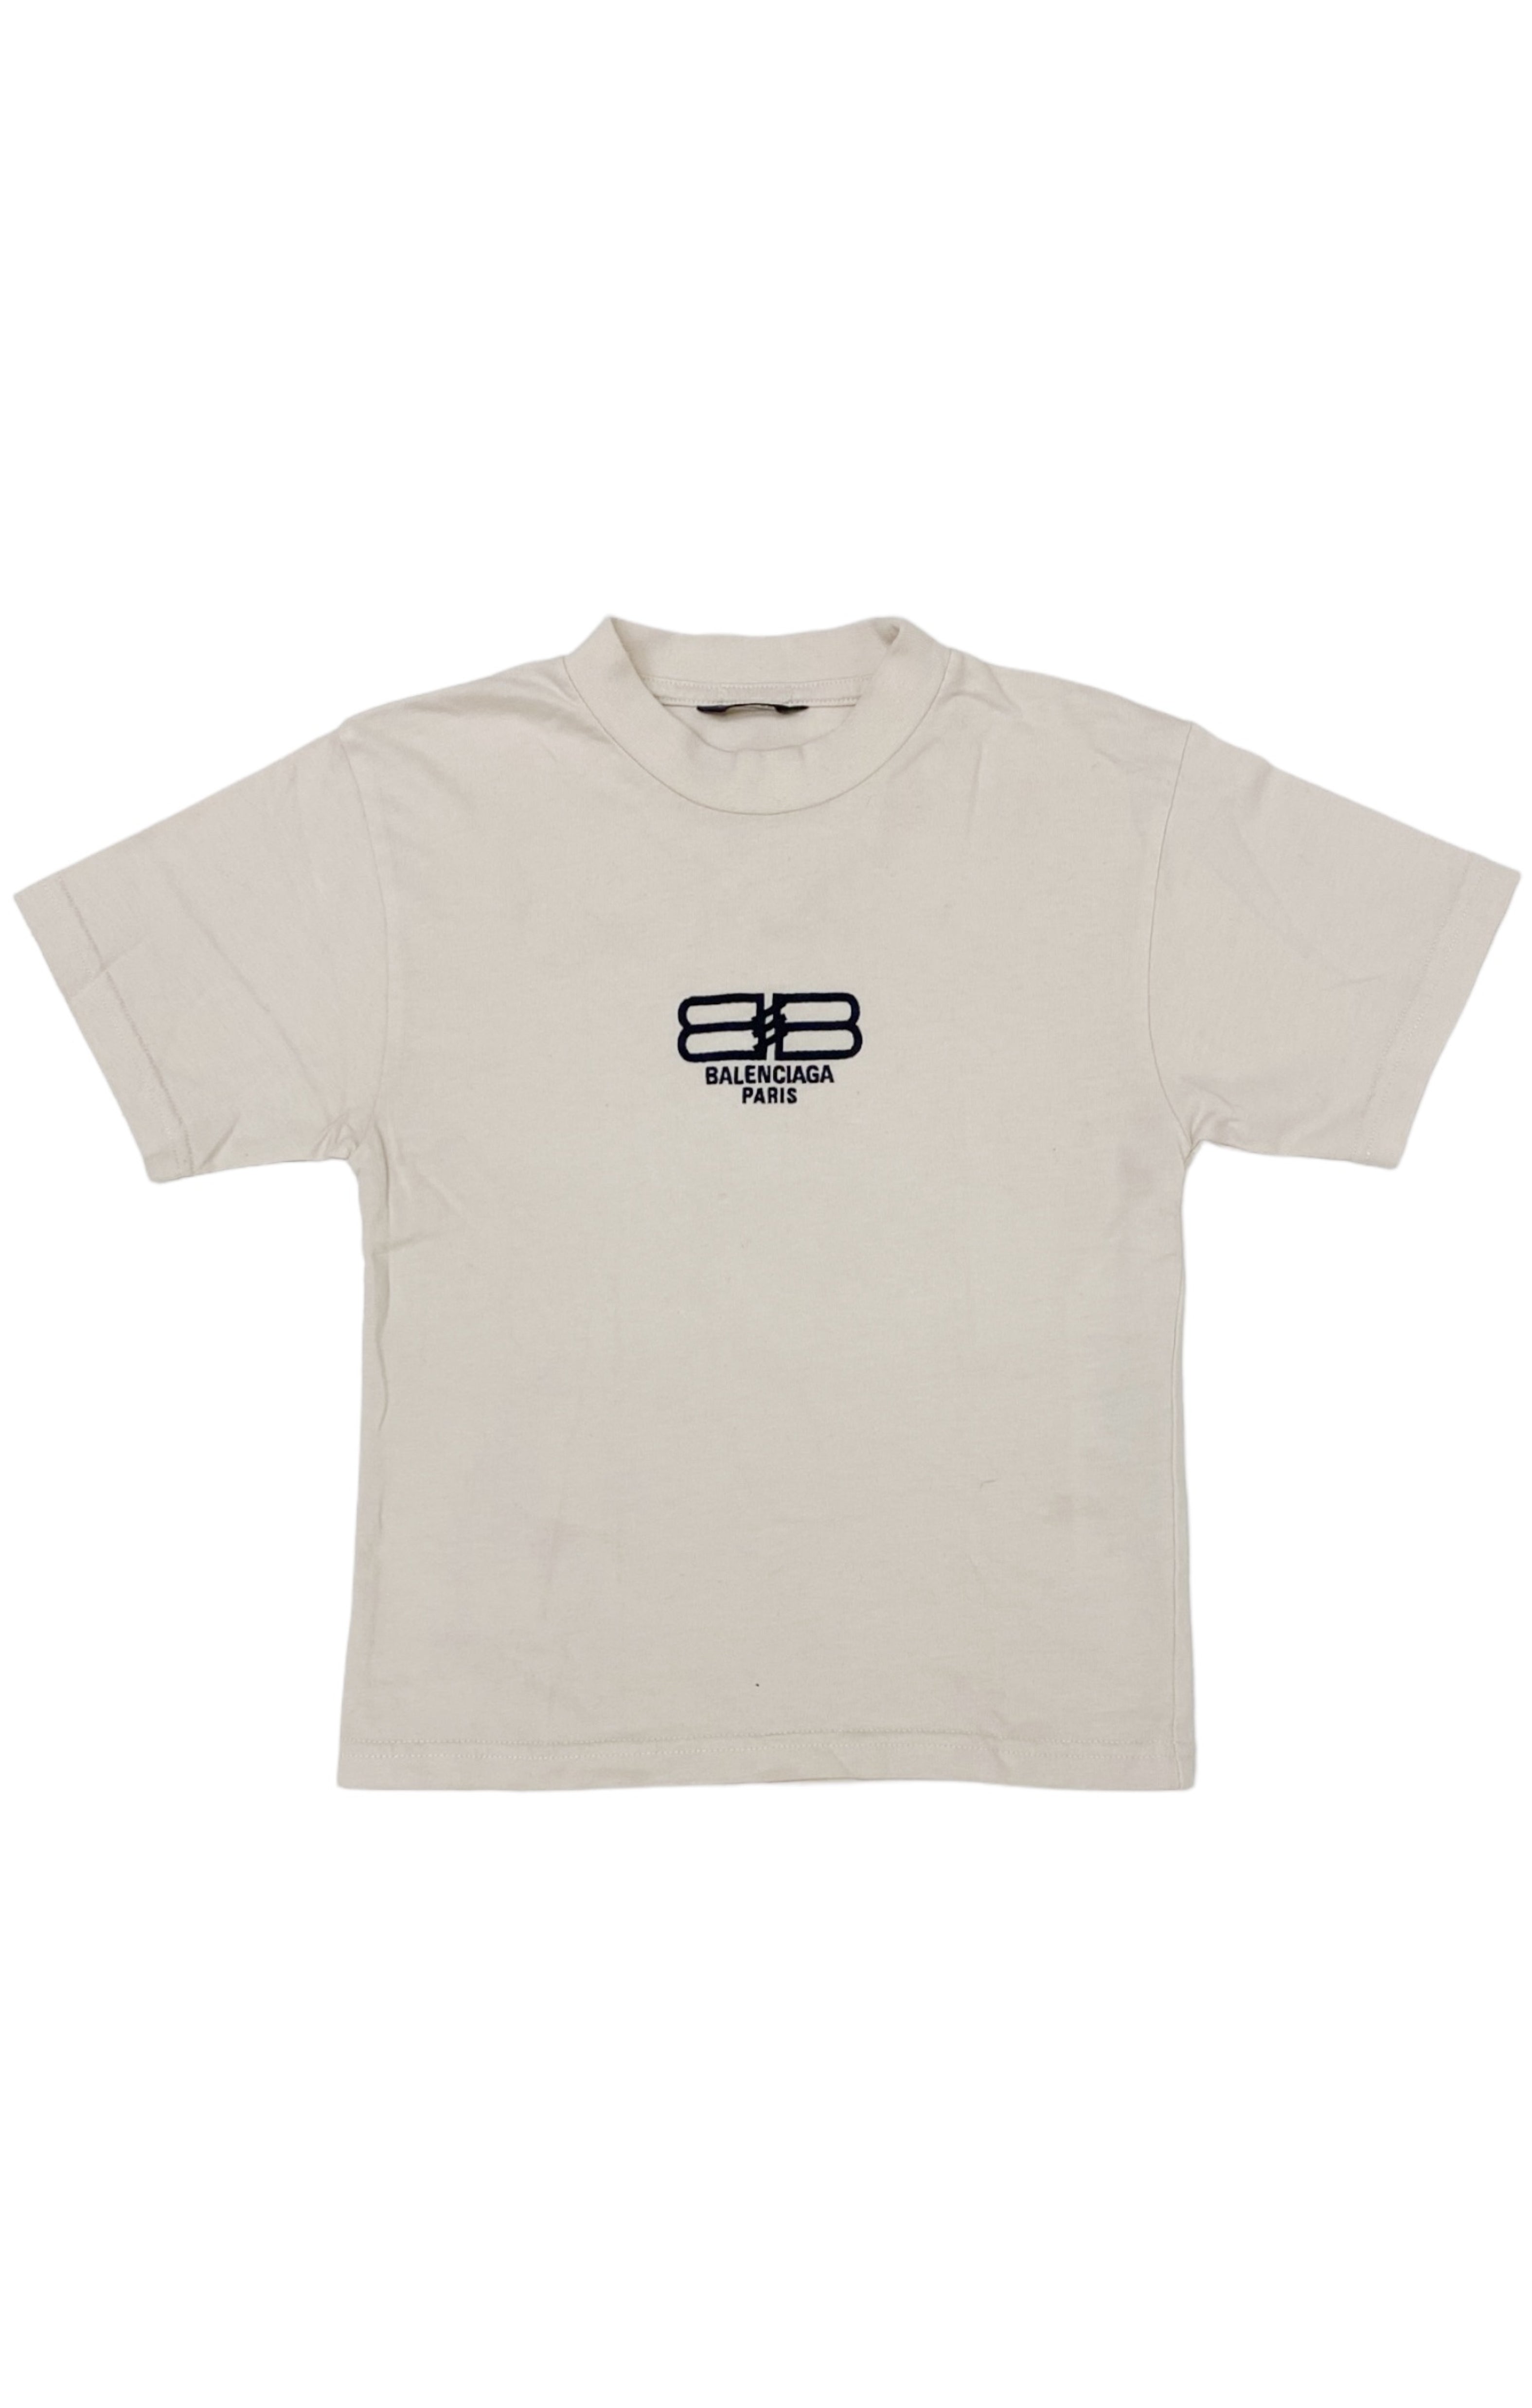 BALENCIAGA KIDS T-shirt Size: 6 Years